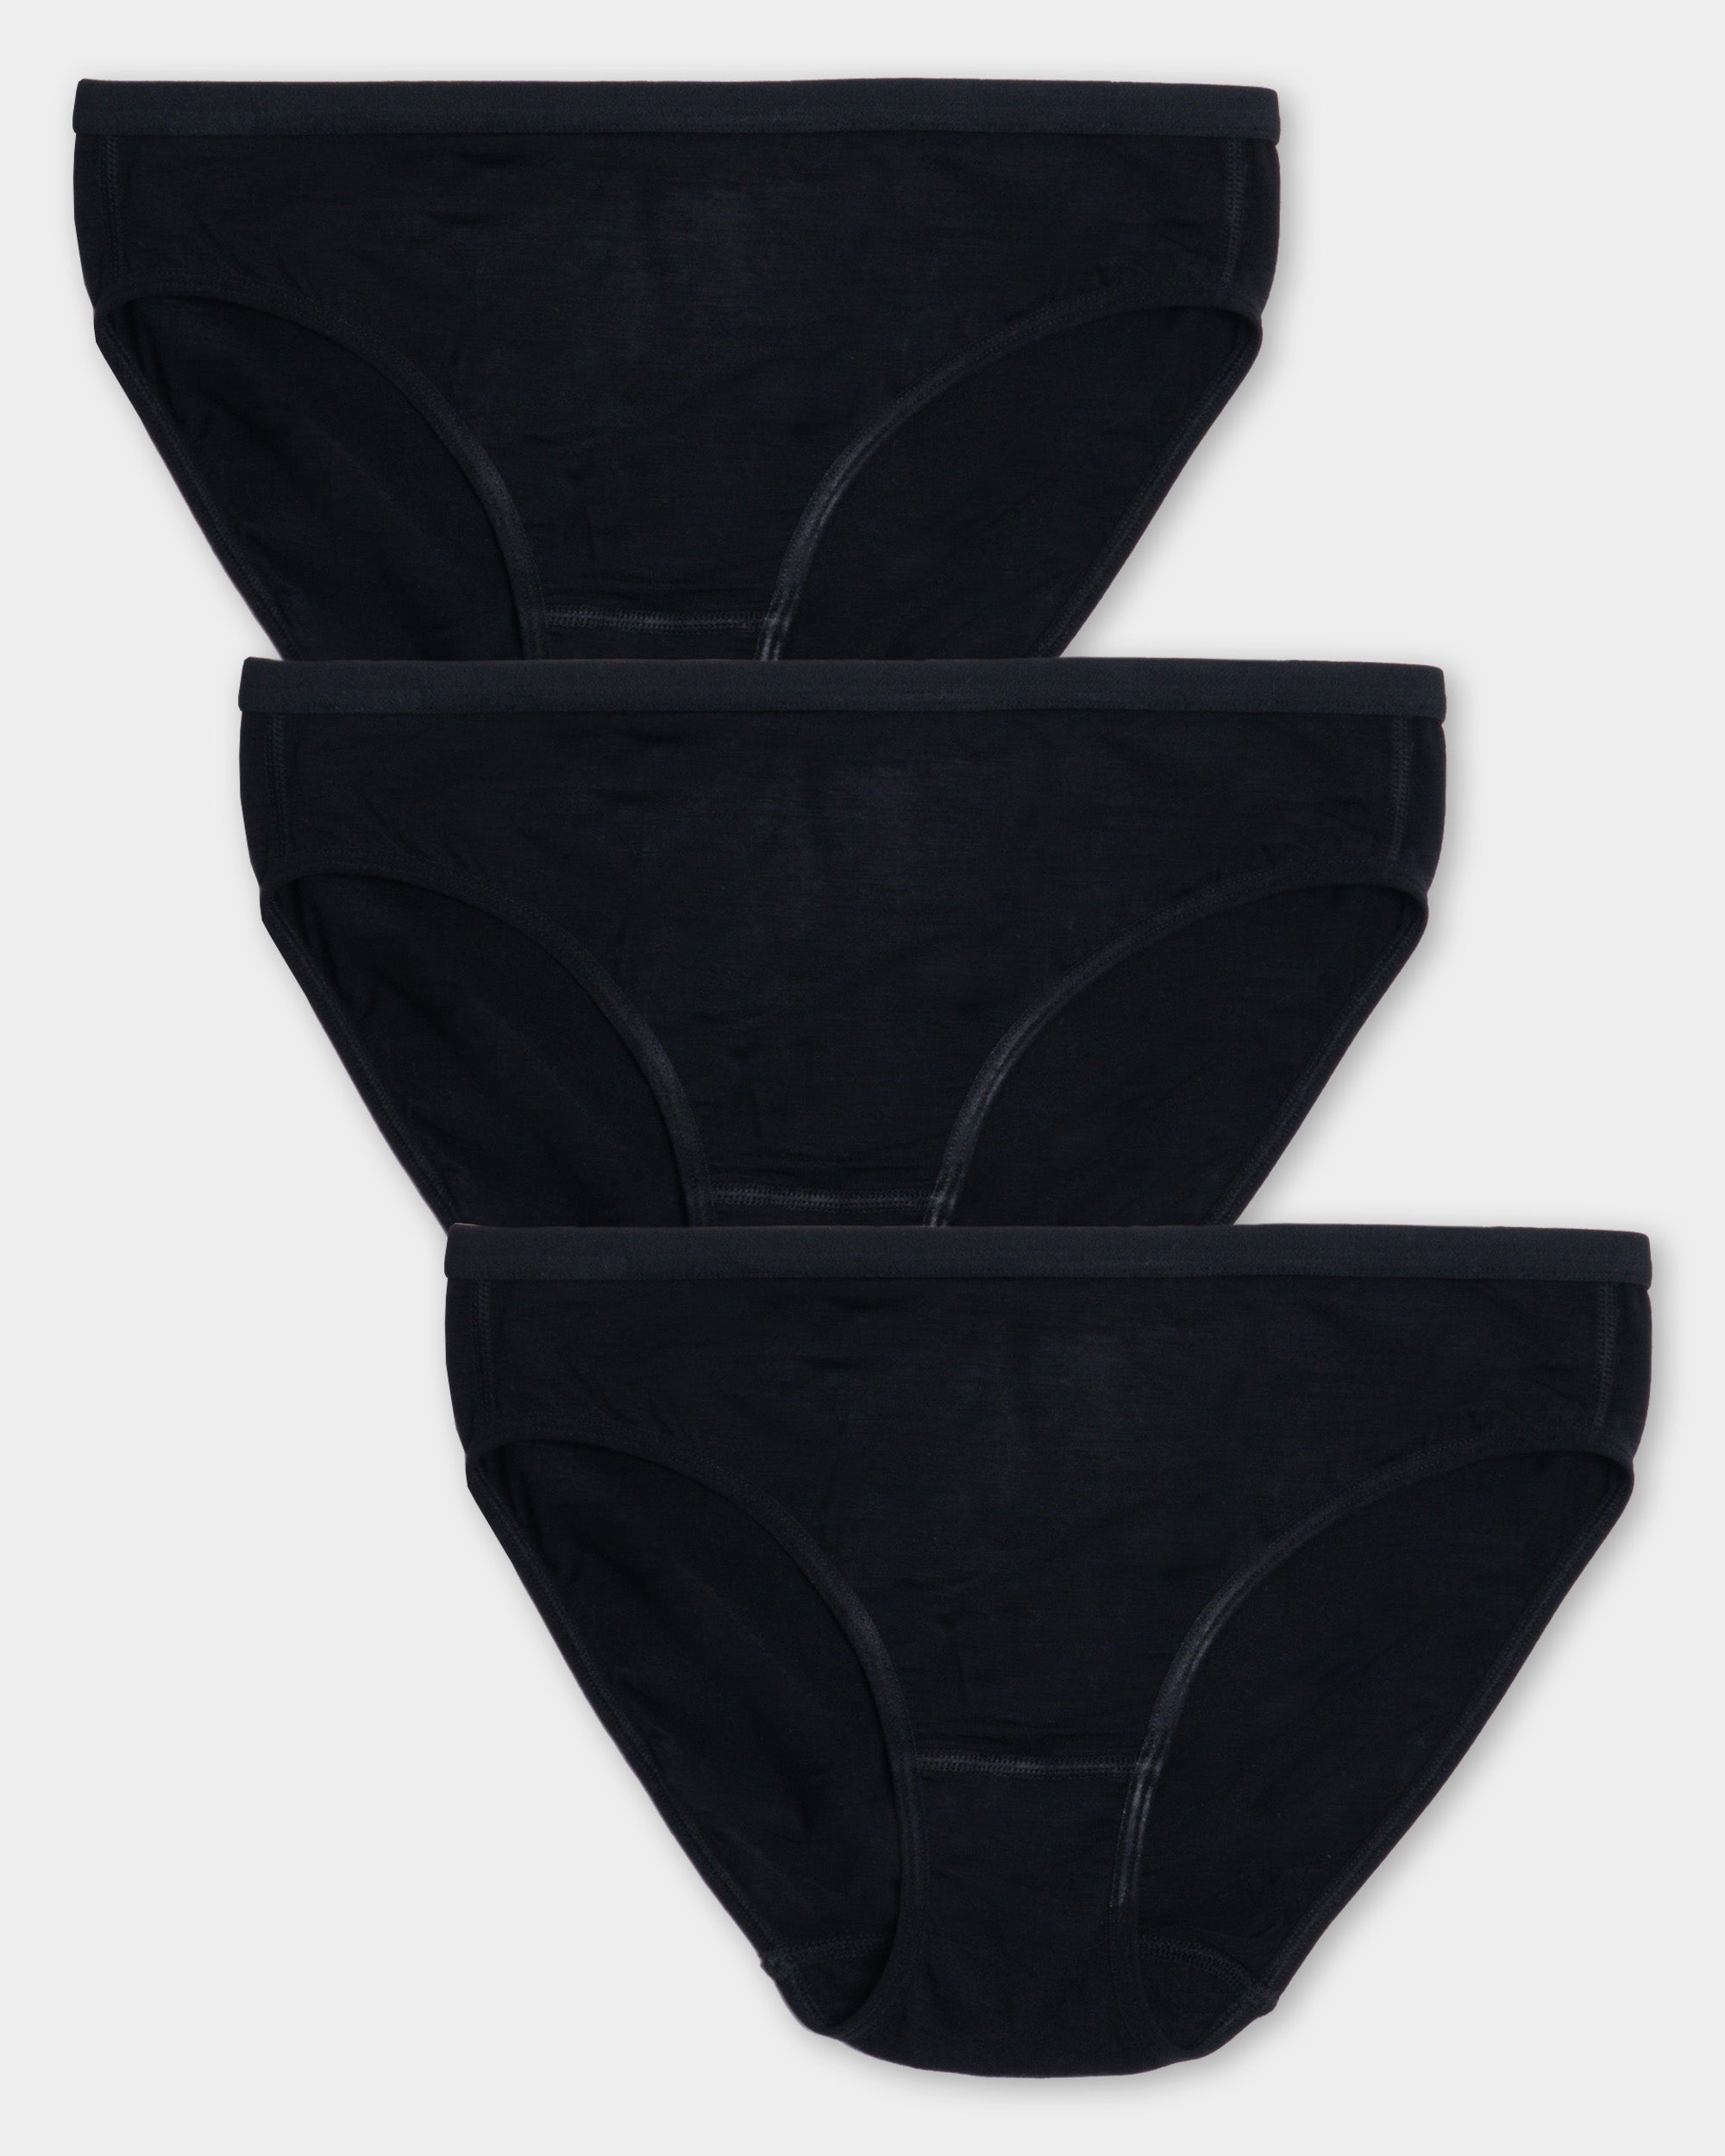 BNIP Ladies Sz M 12 Avon Clara Brief 3 Pack Underwear Briefs Black